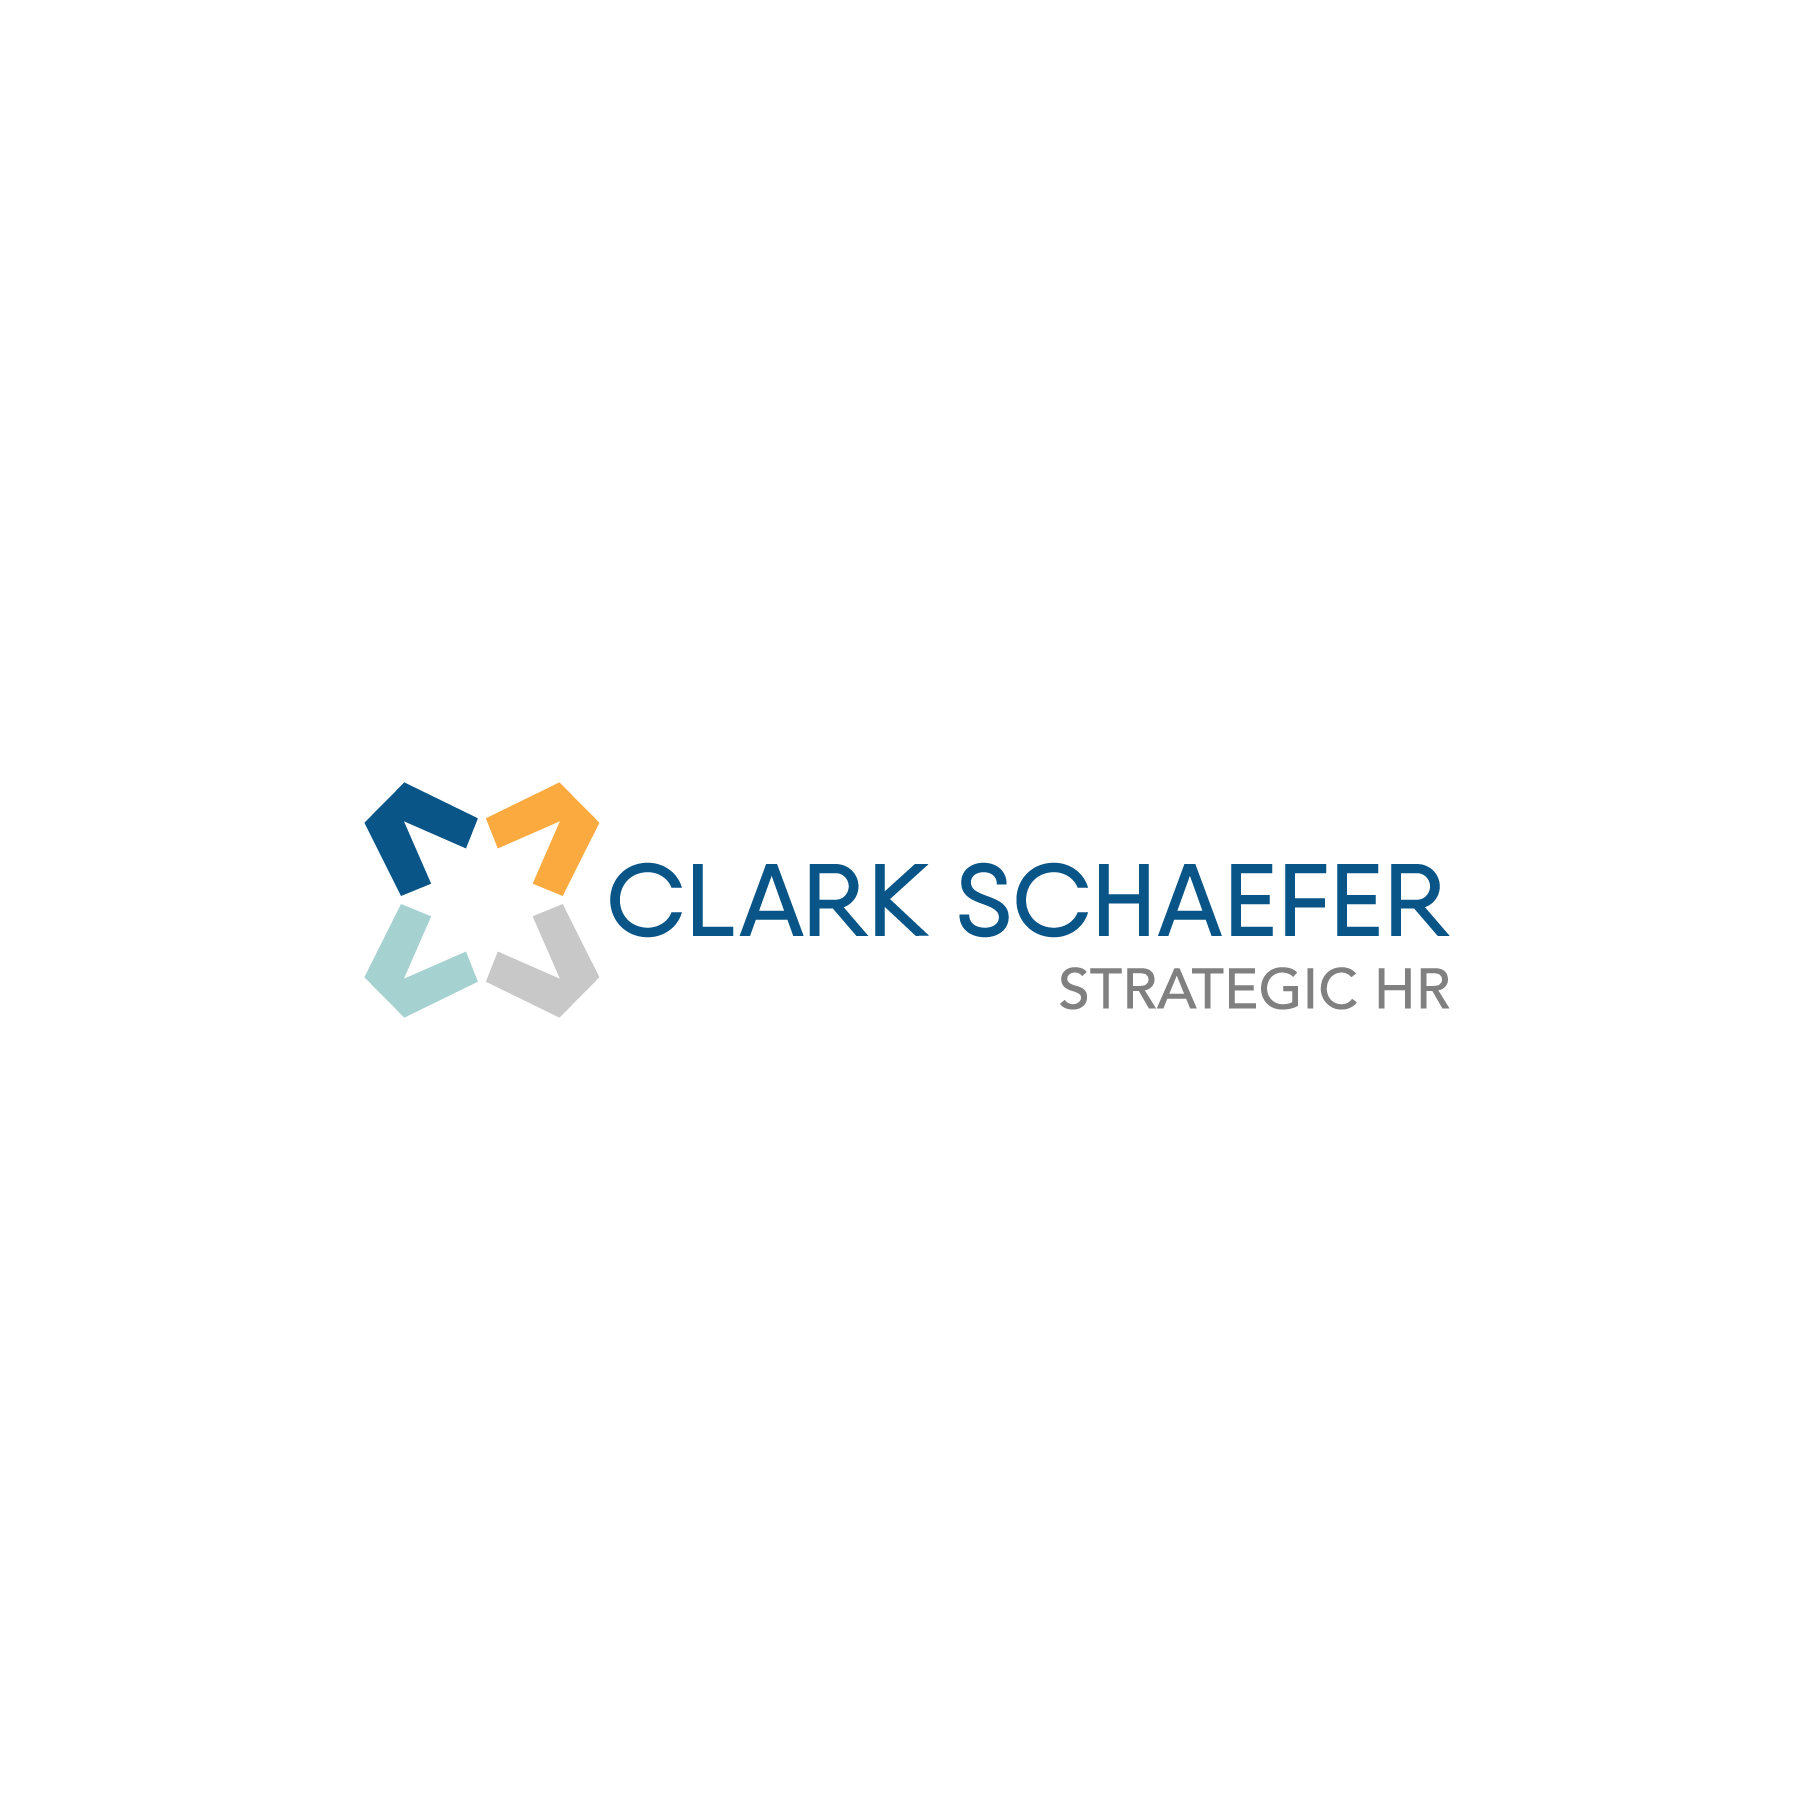 Clark Schaefer Strategic HR 